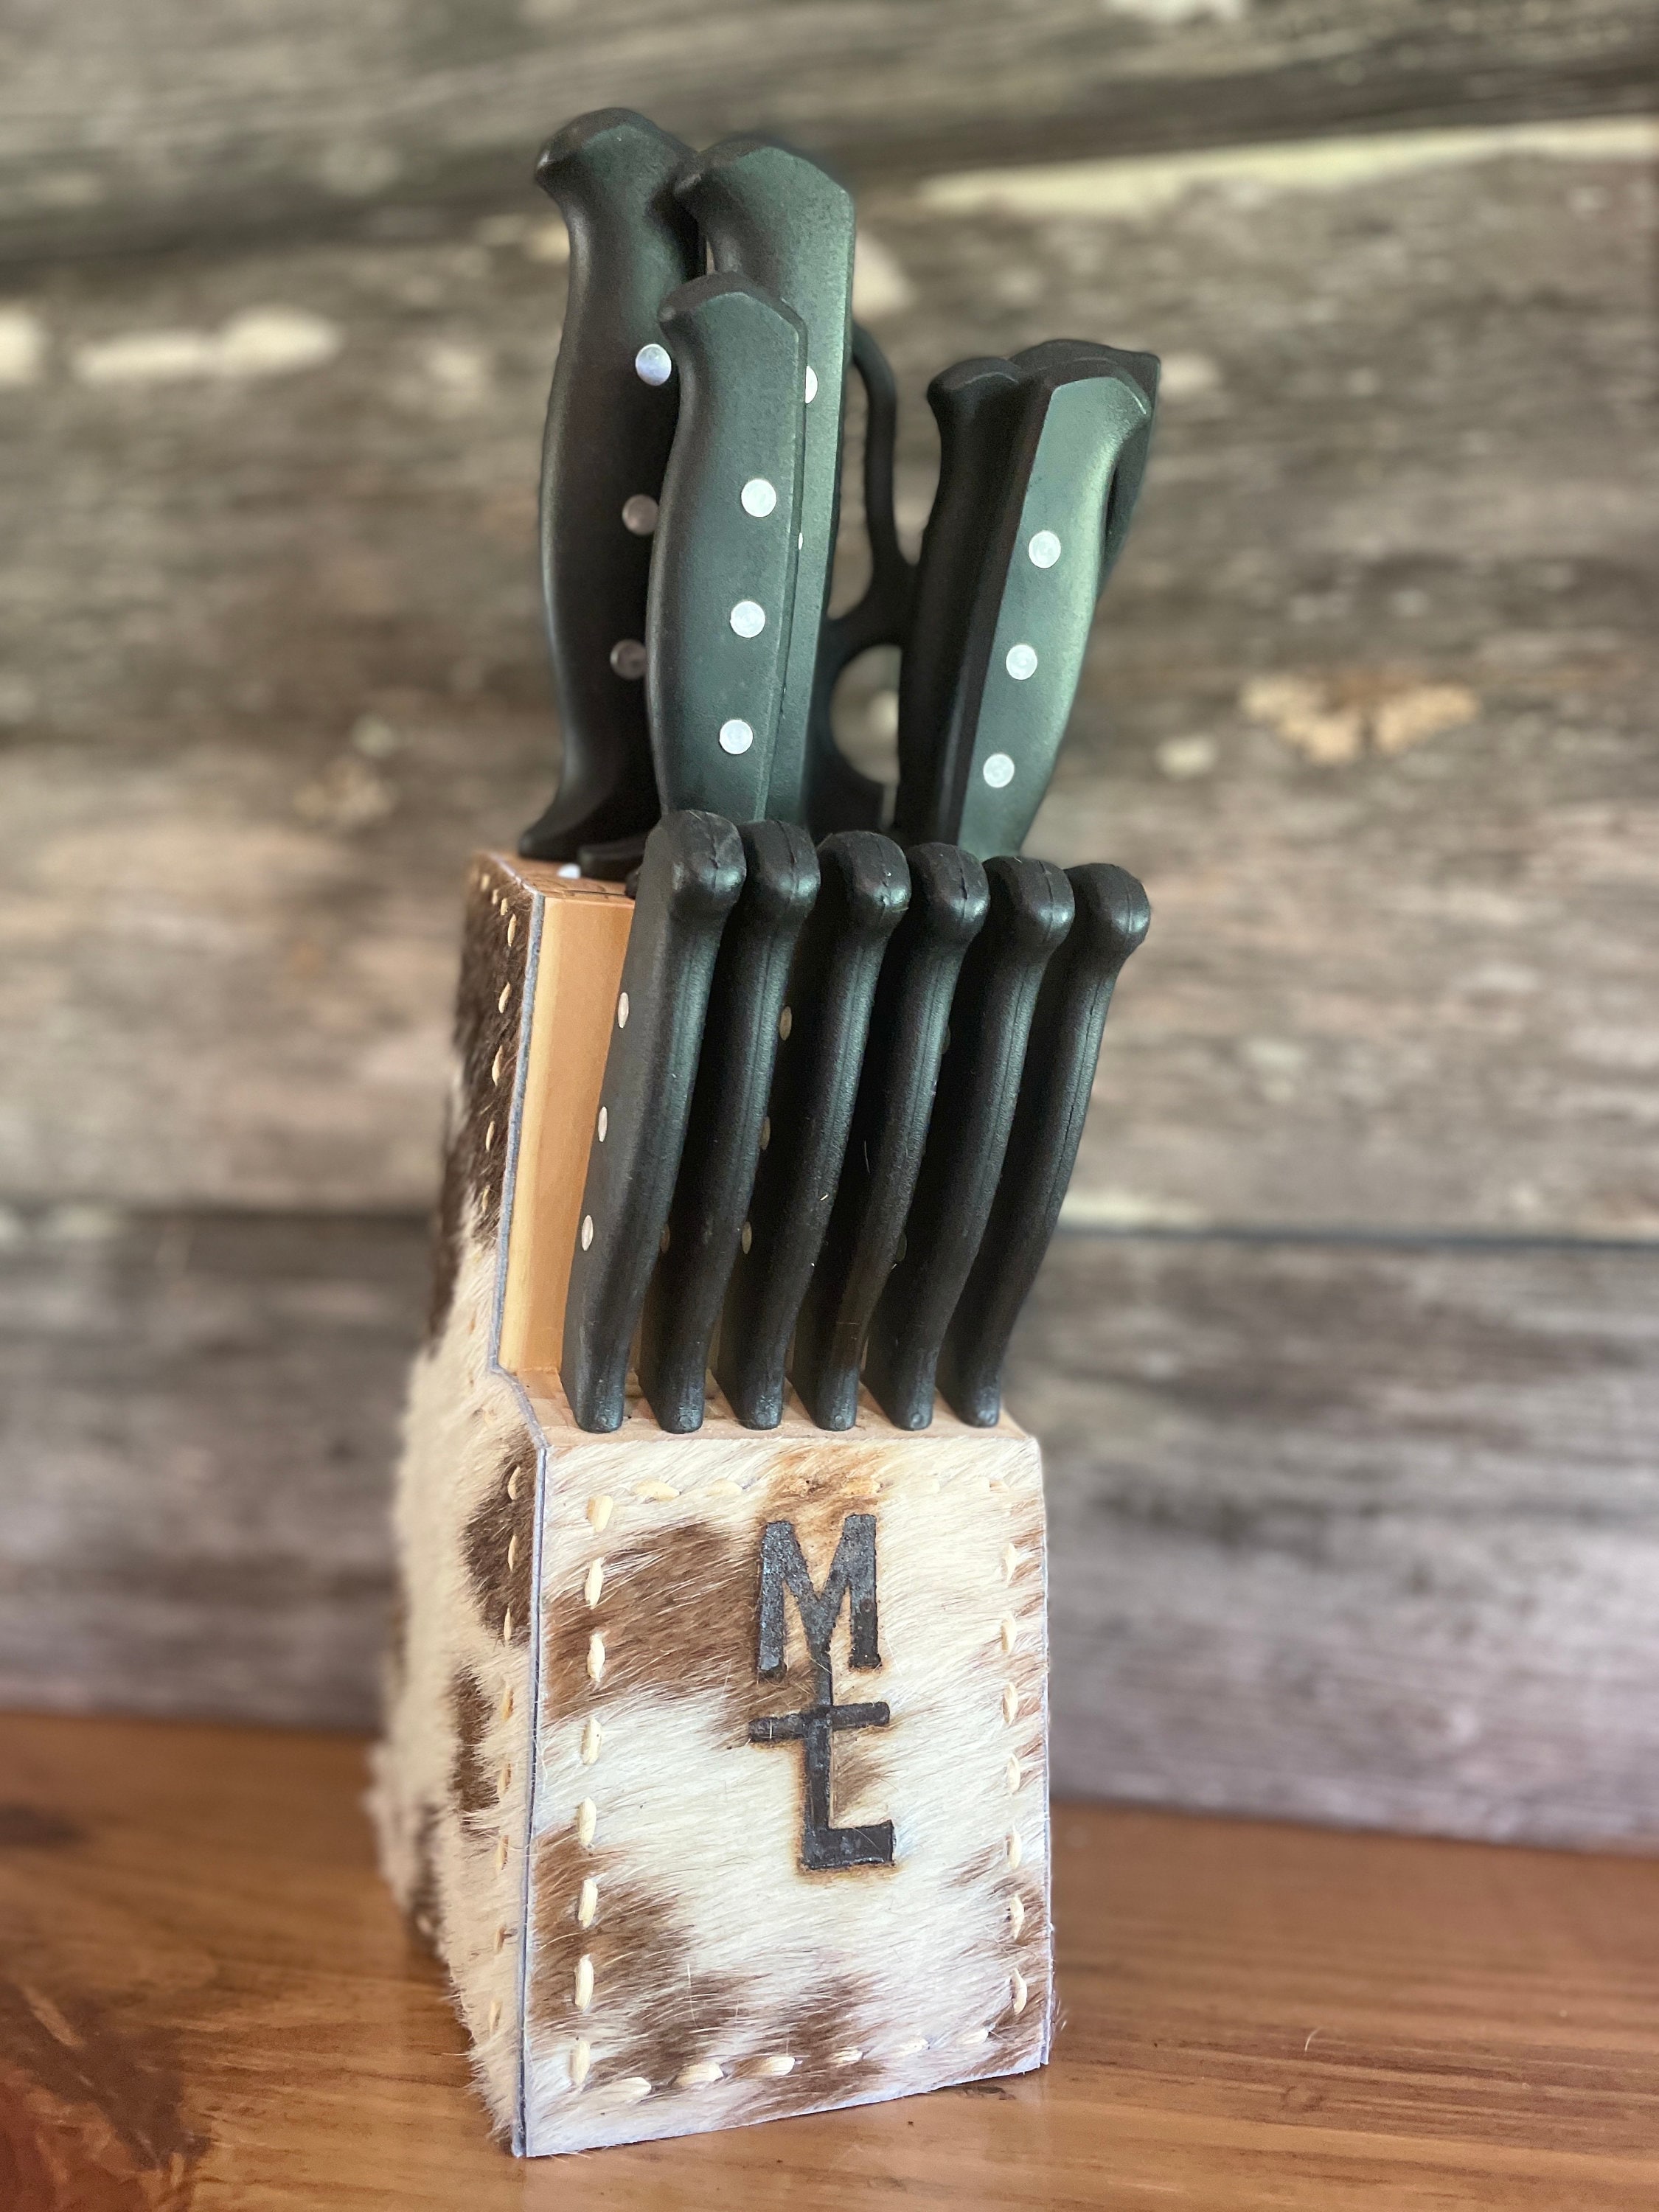 Rada Essential Oak Block Set of 8 Black Handled Knives with Knife Sharpener